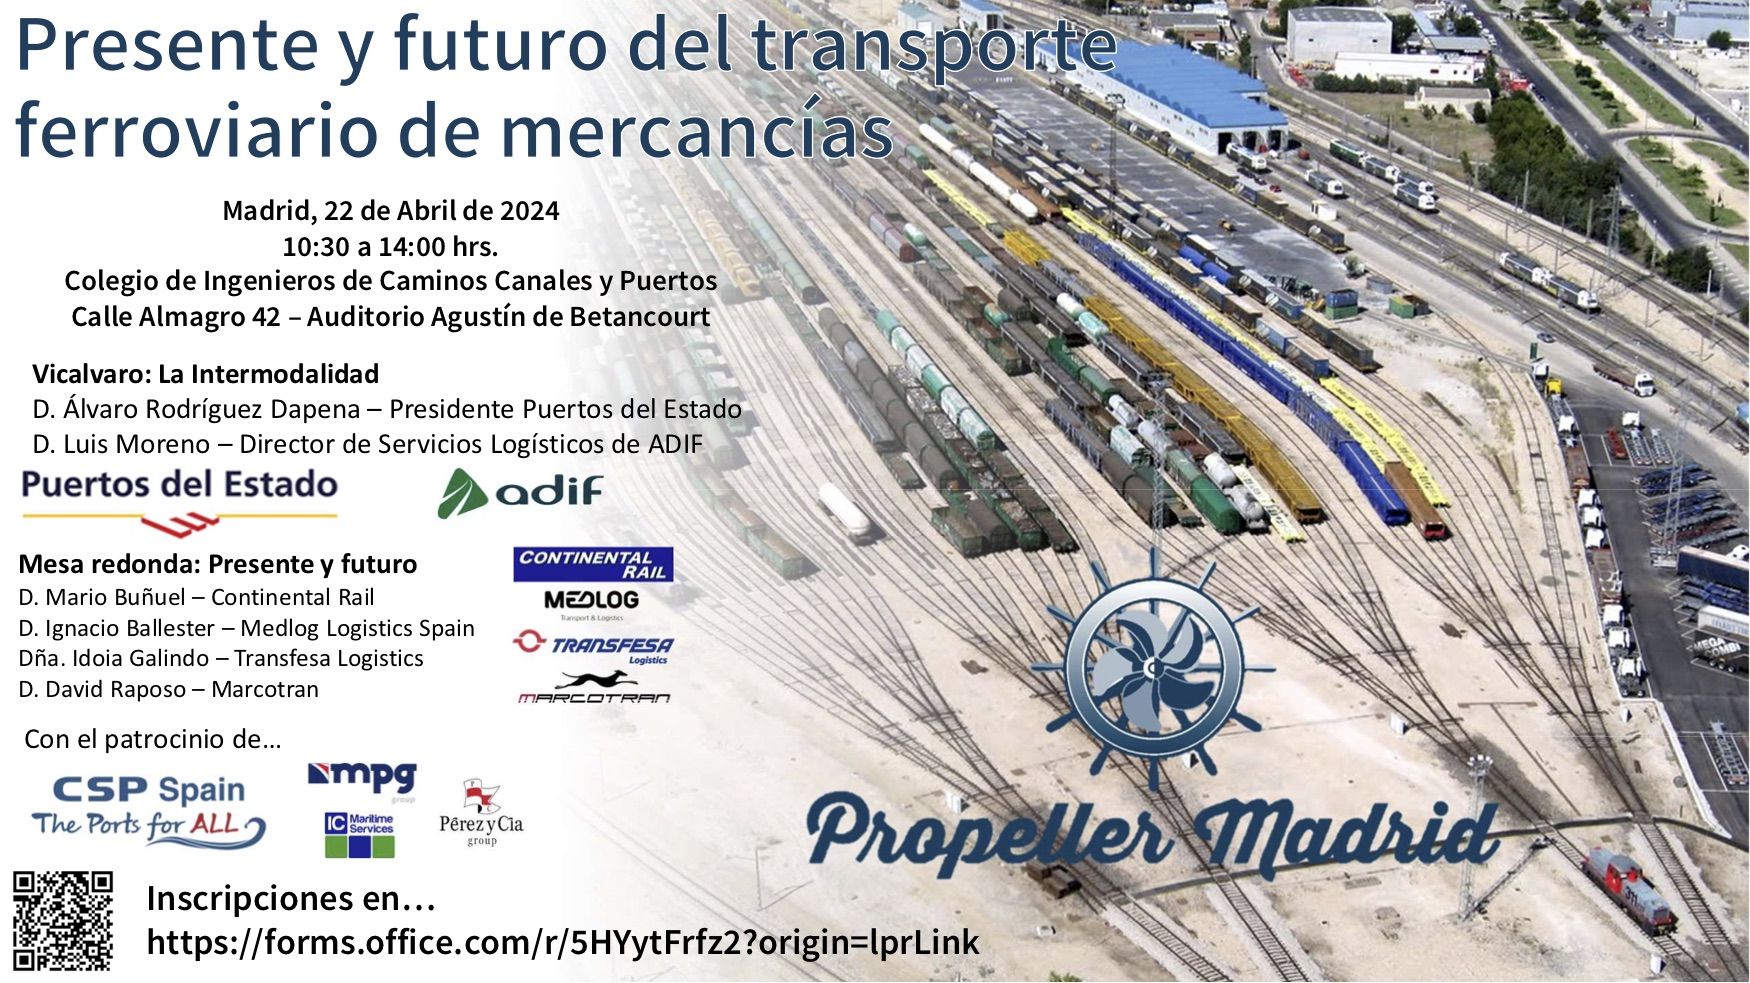 Mar Chao, vicepresidenta primera del Propeller Madrid, será la encargada de inaugurar esta sesión.